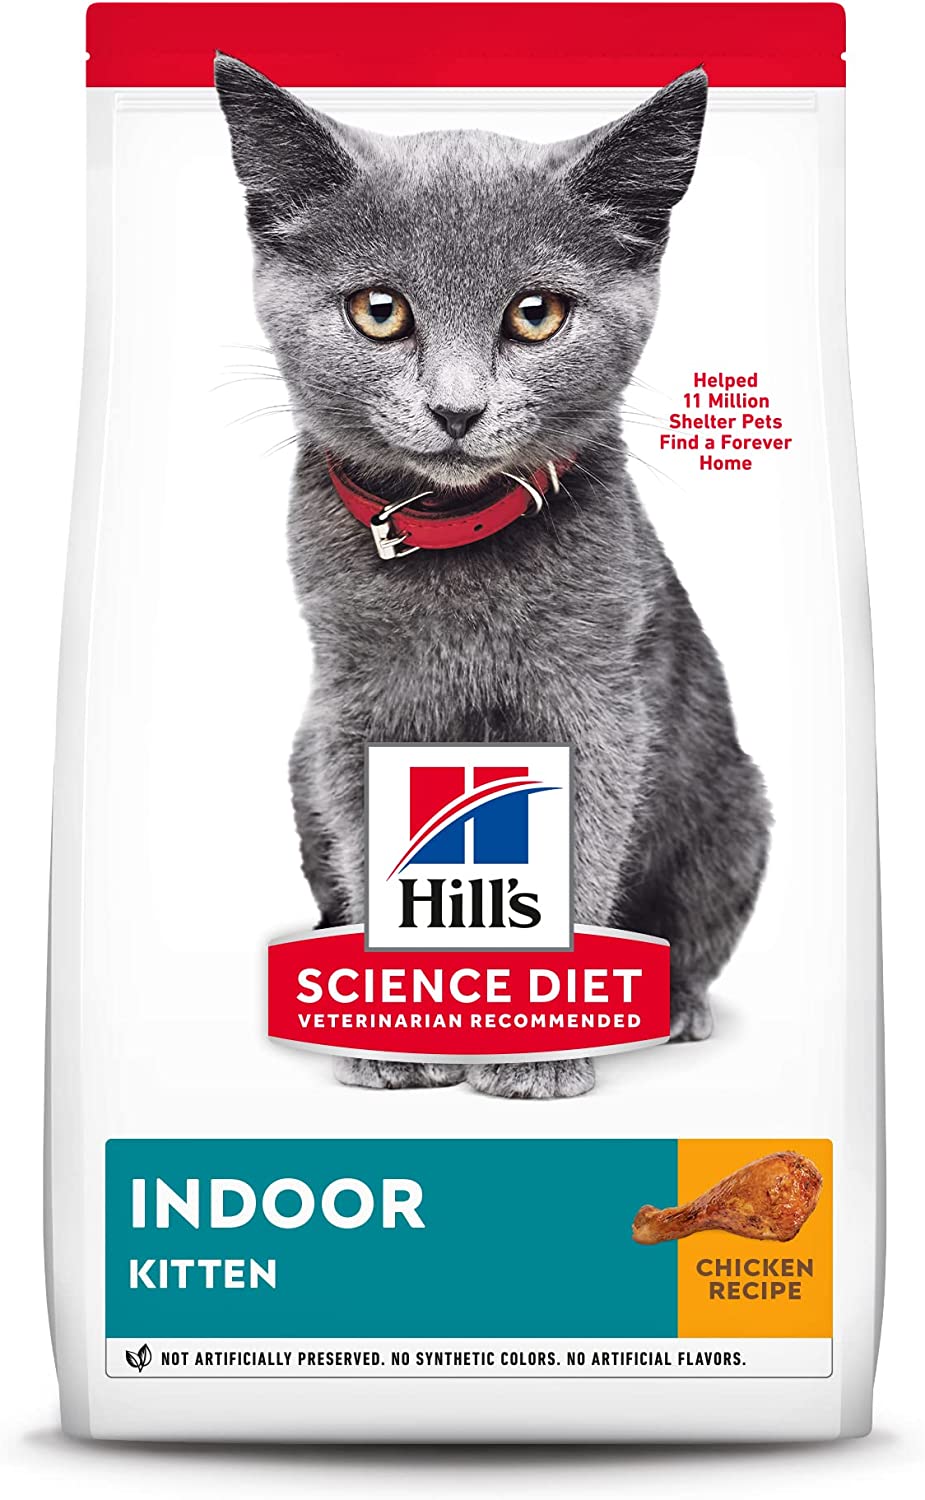 Hill's Science Diet Indoor Kitten Dry Food